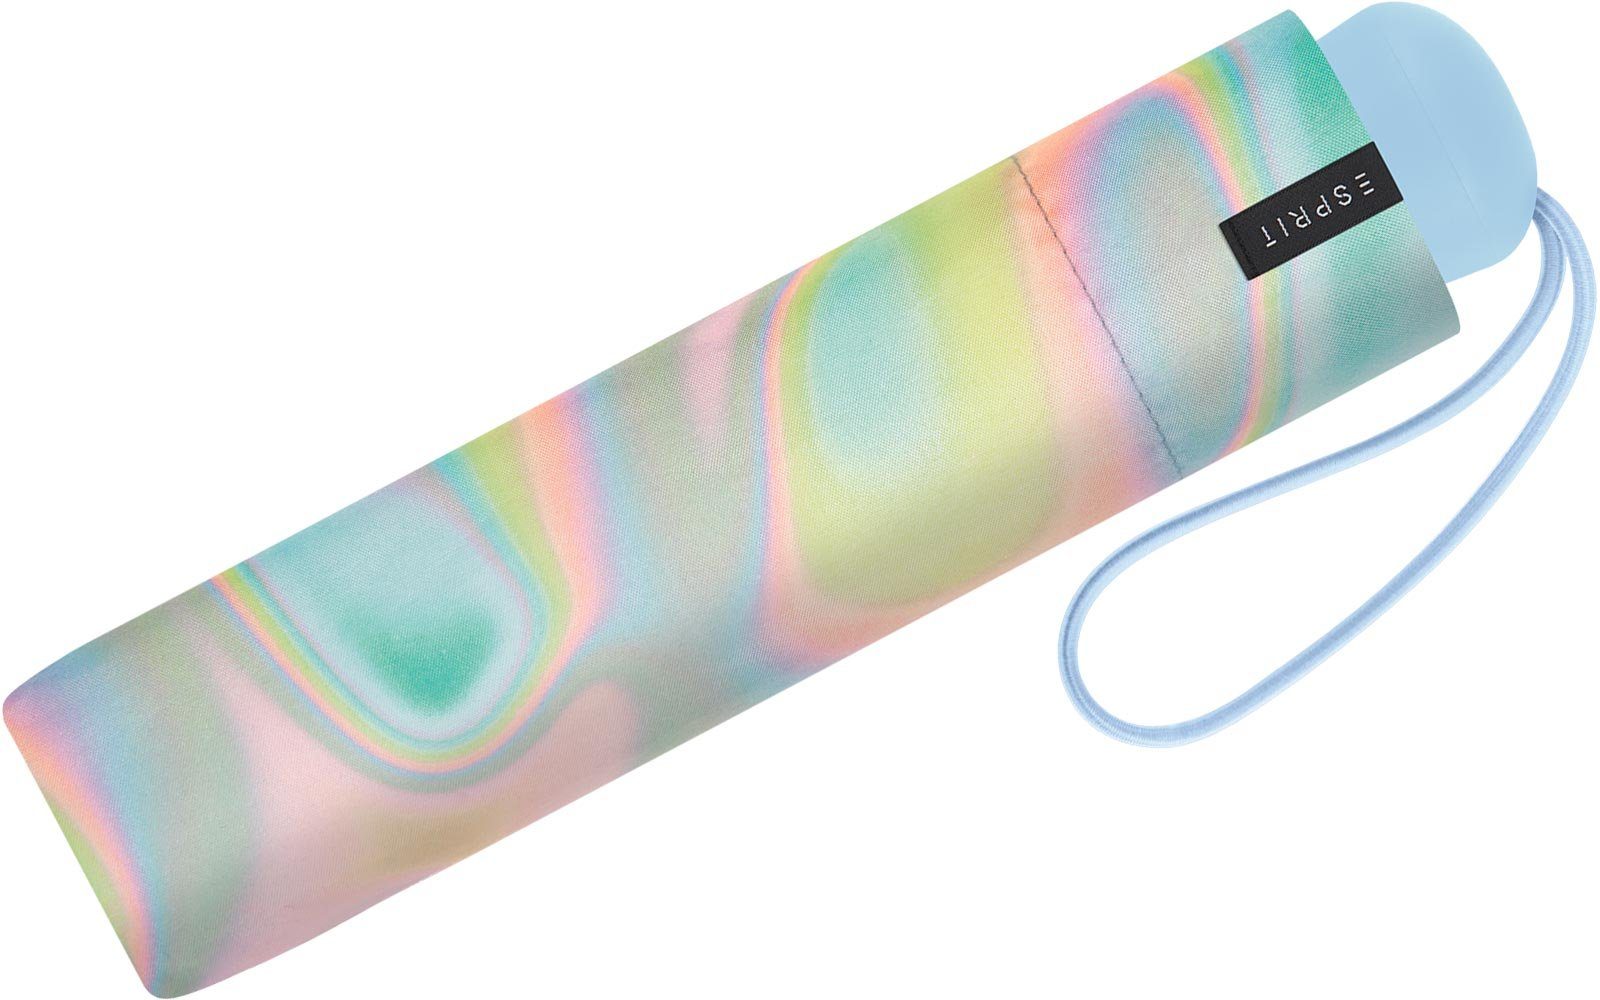 Farbverlauf-Muster und Damen-Taschenschirm stabil, Langregenschirm klein bedruckt Esprit farbenfroh mit